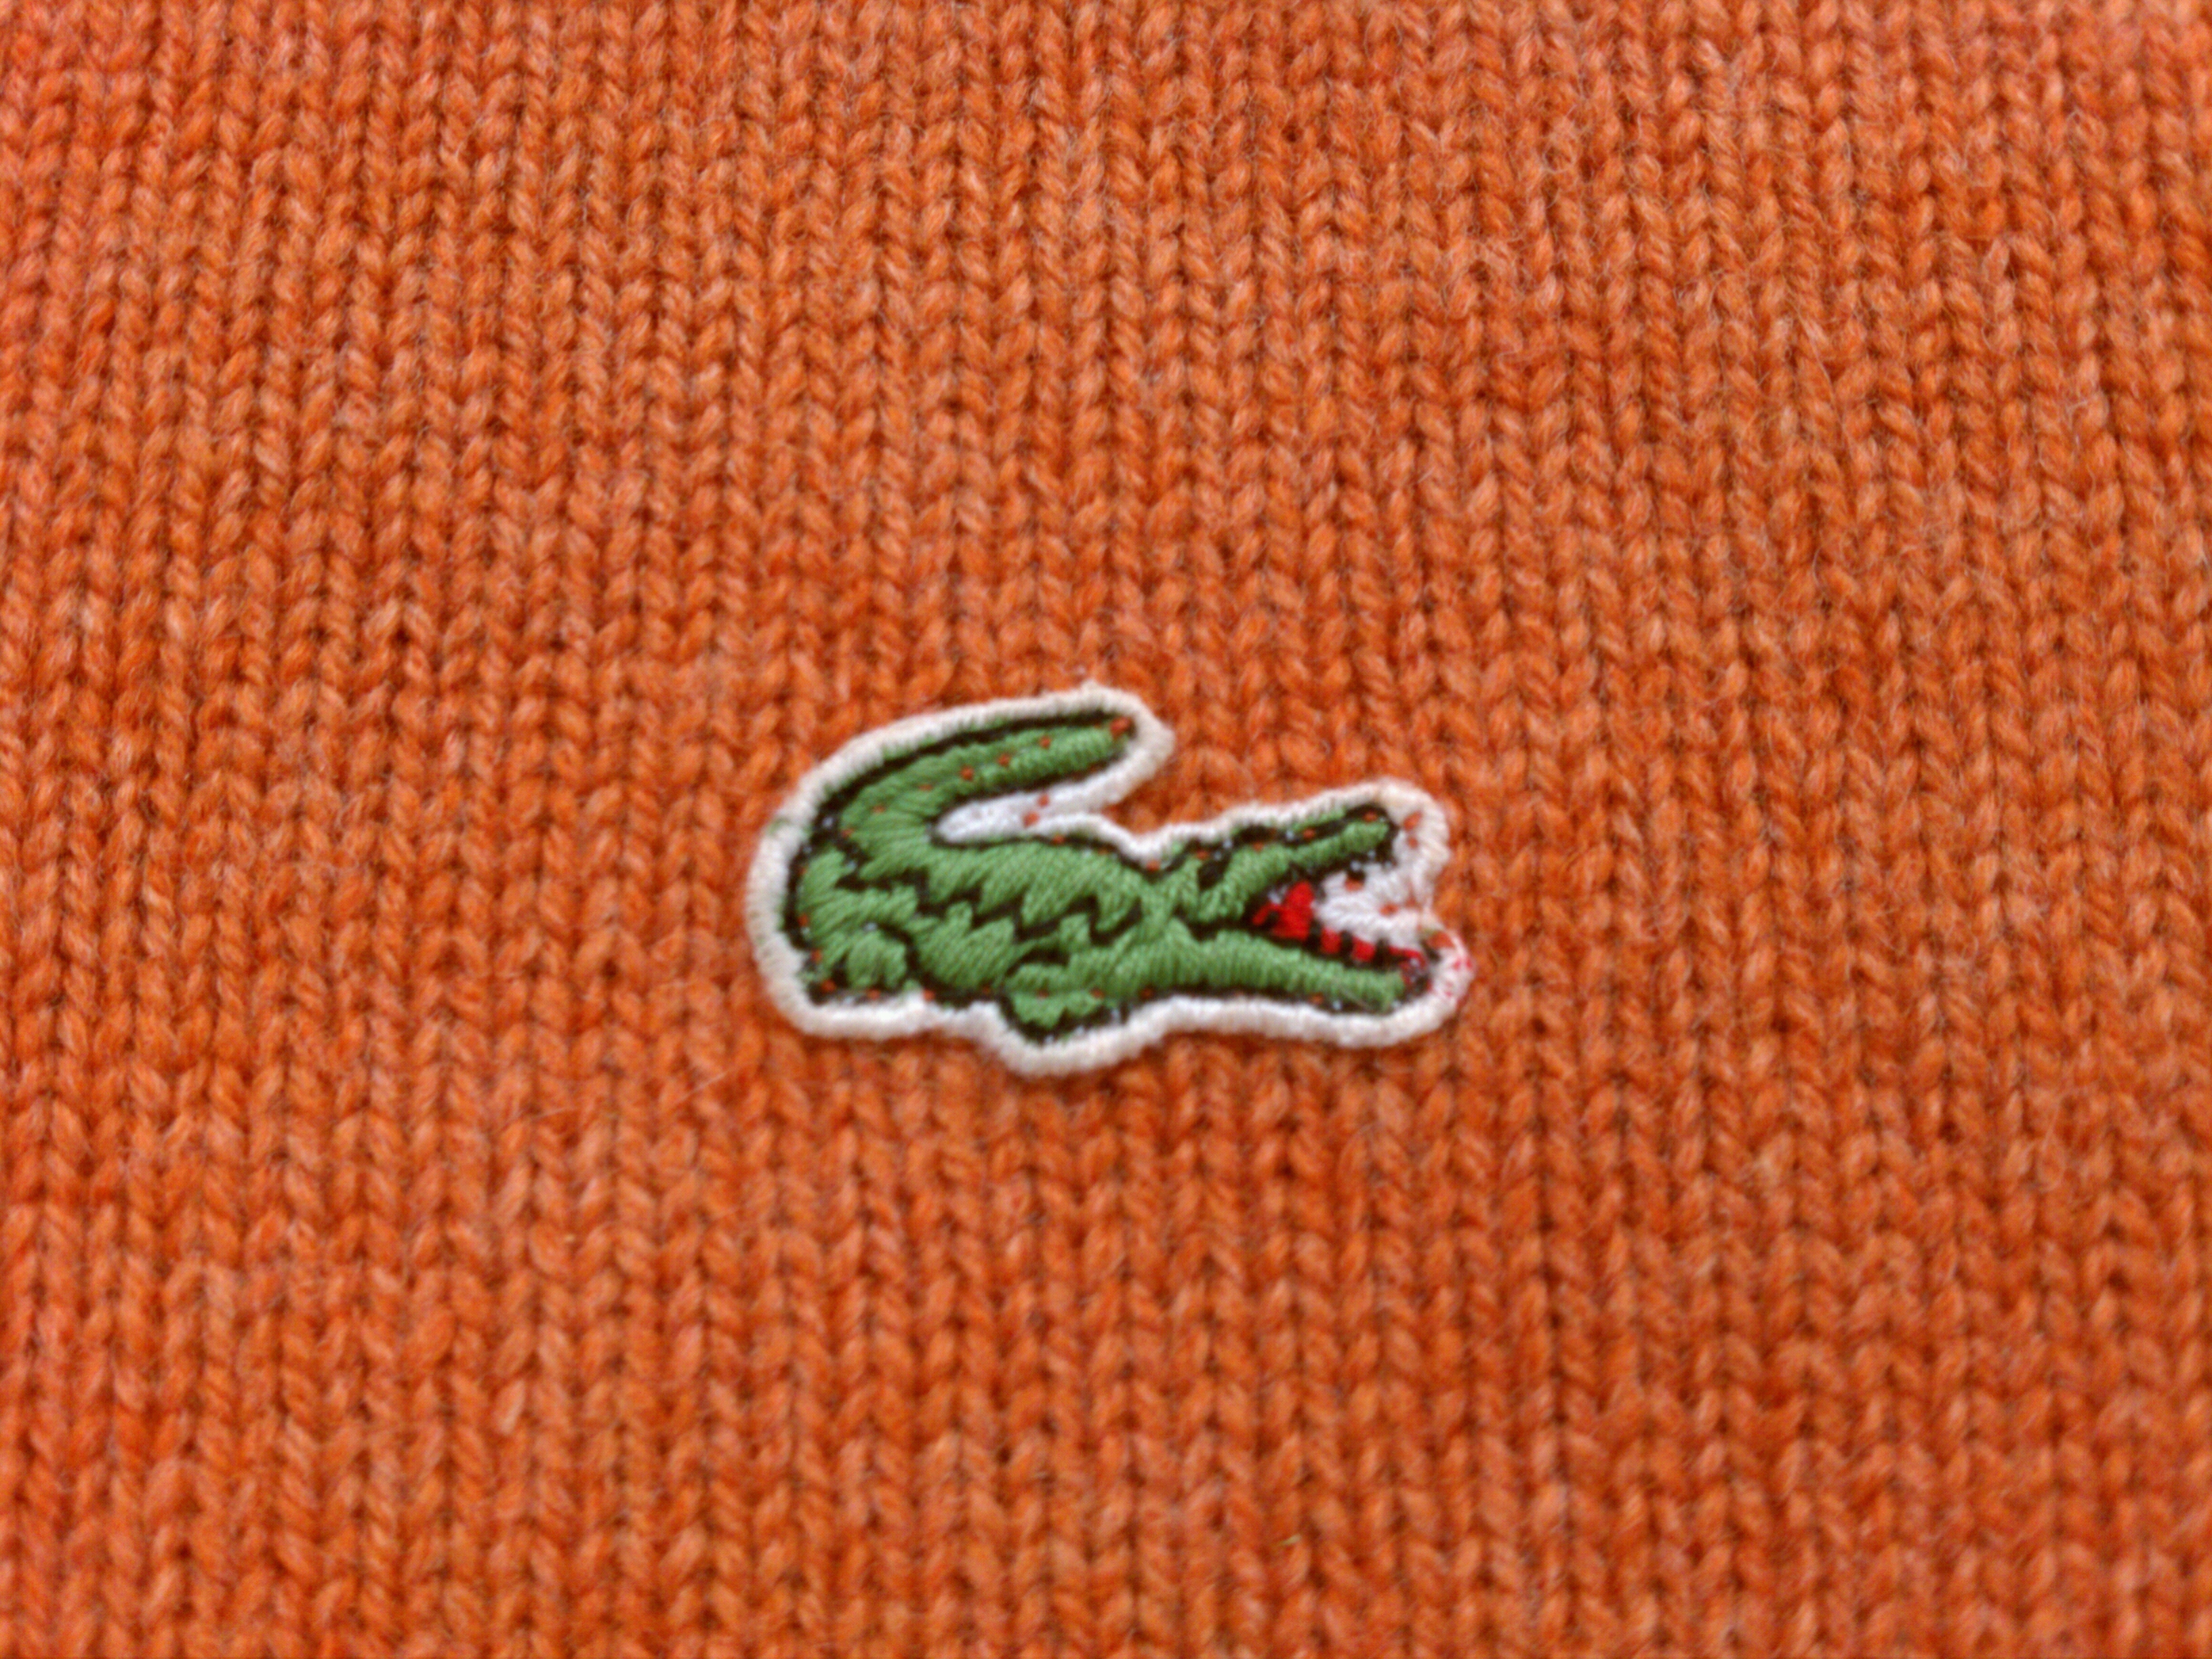 clothing with gator logo